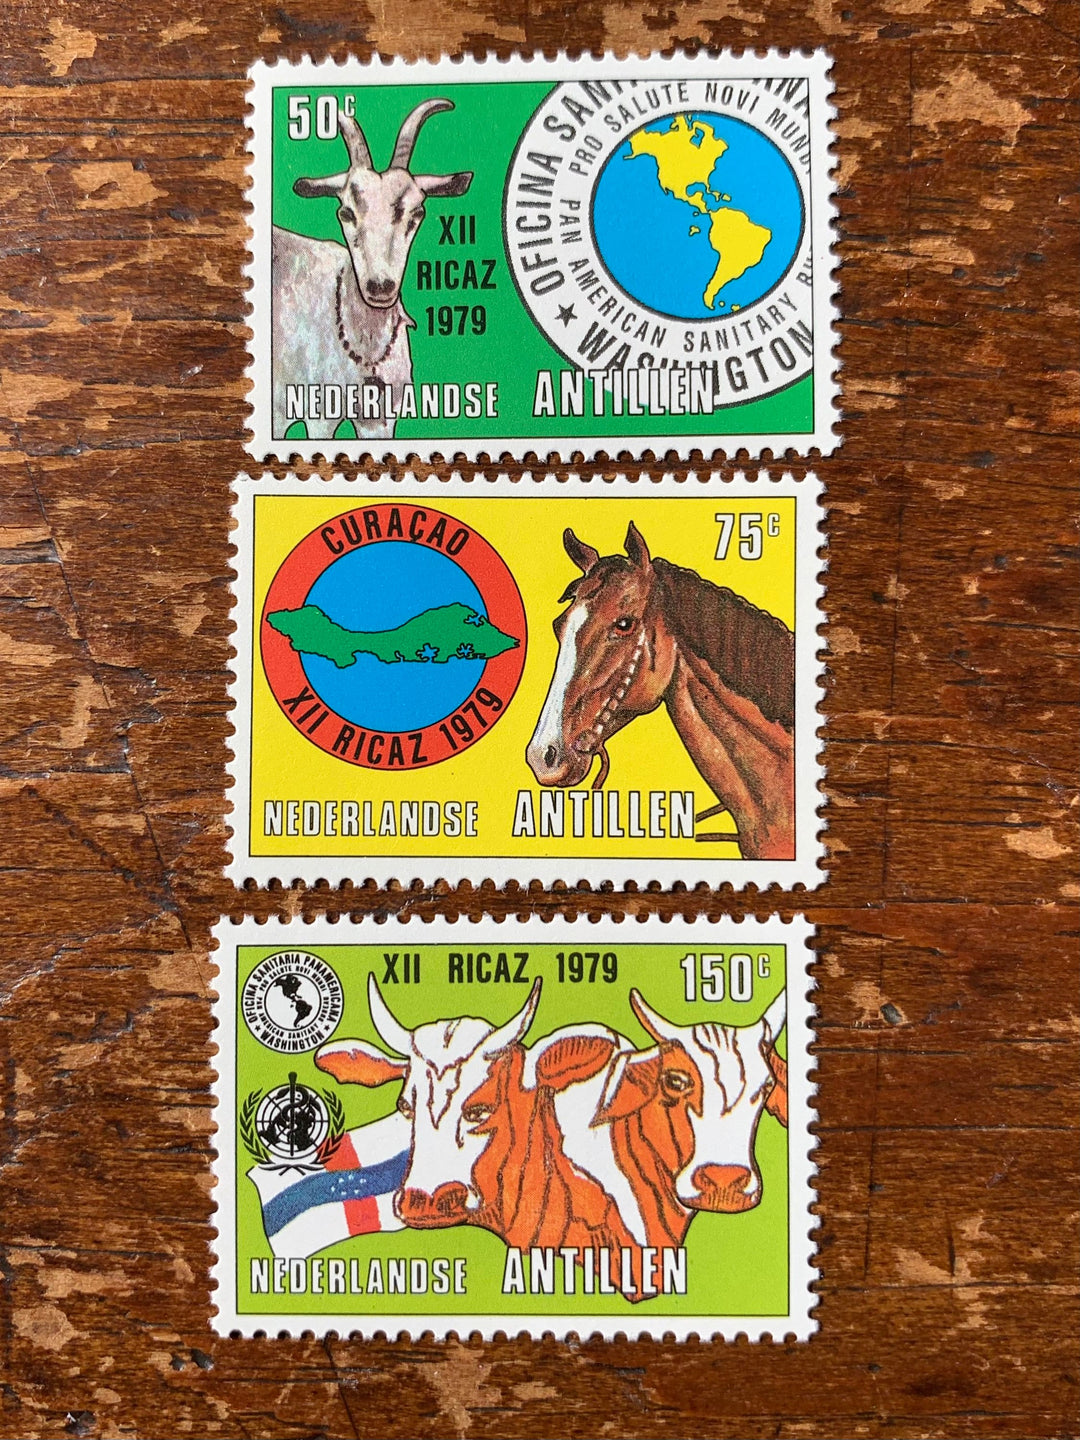 Netherlands Antilles- Original Vintage Postage Stamps-1979 Agriculture